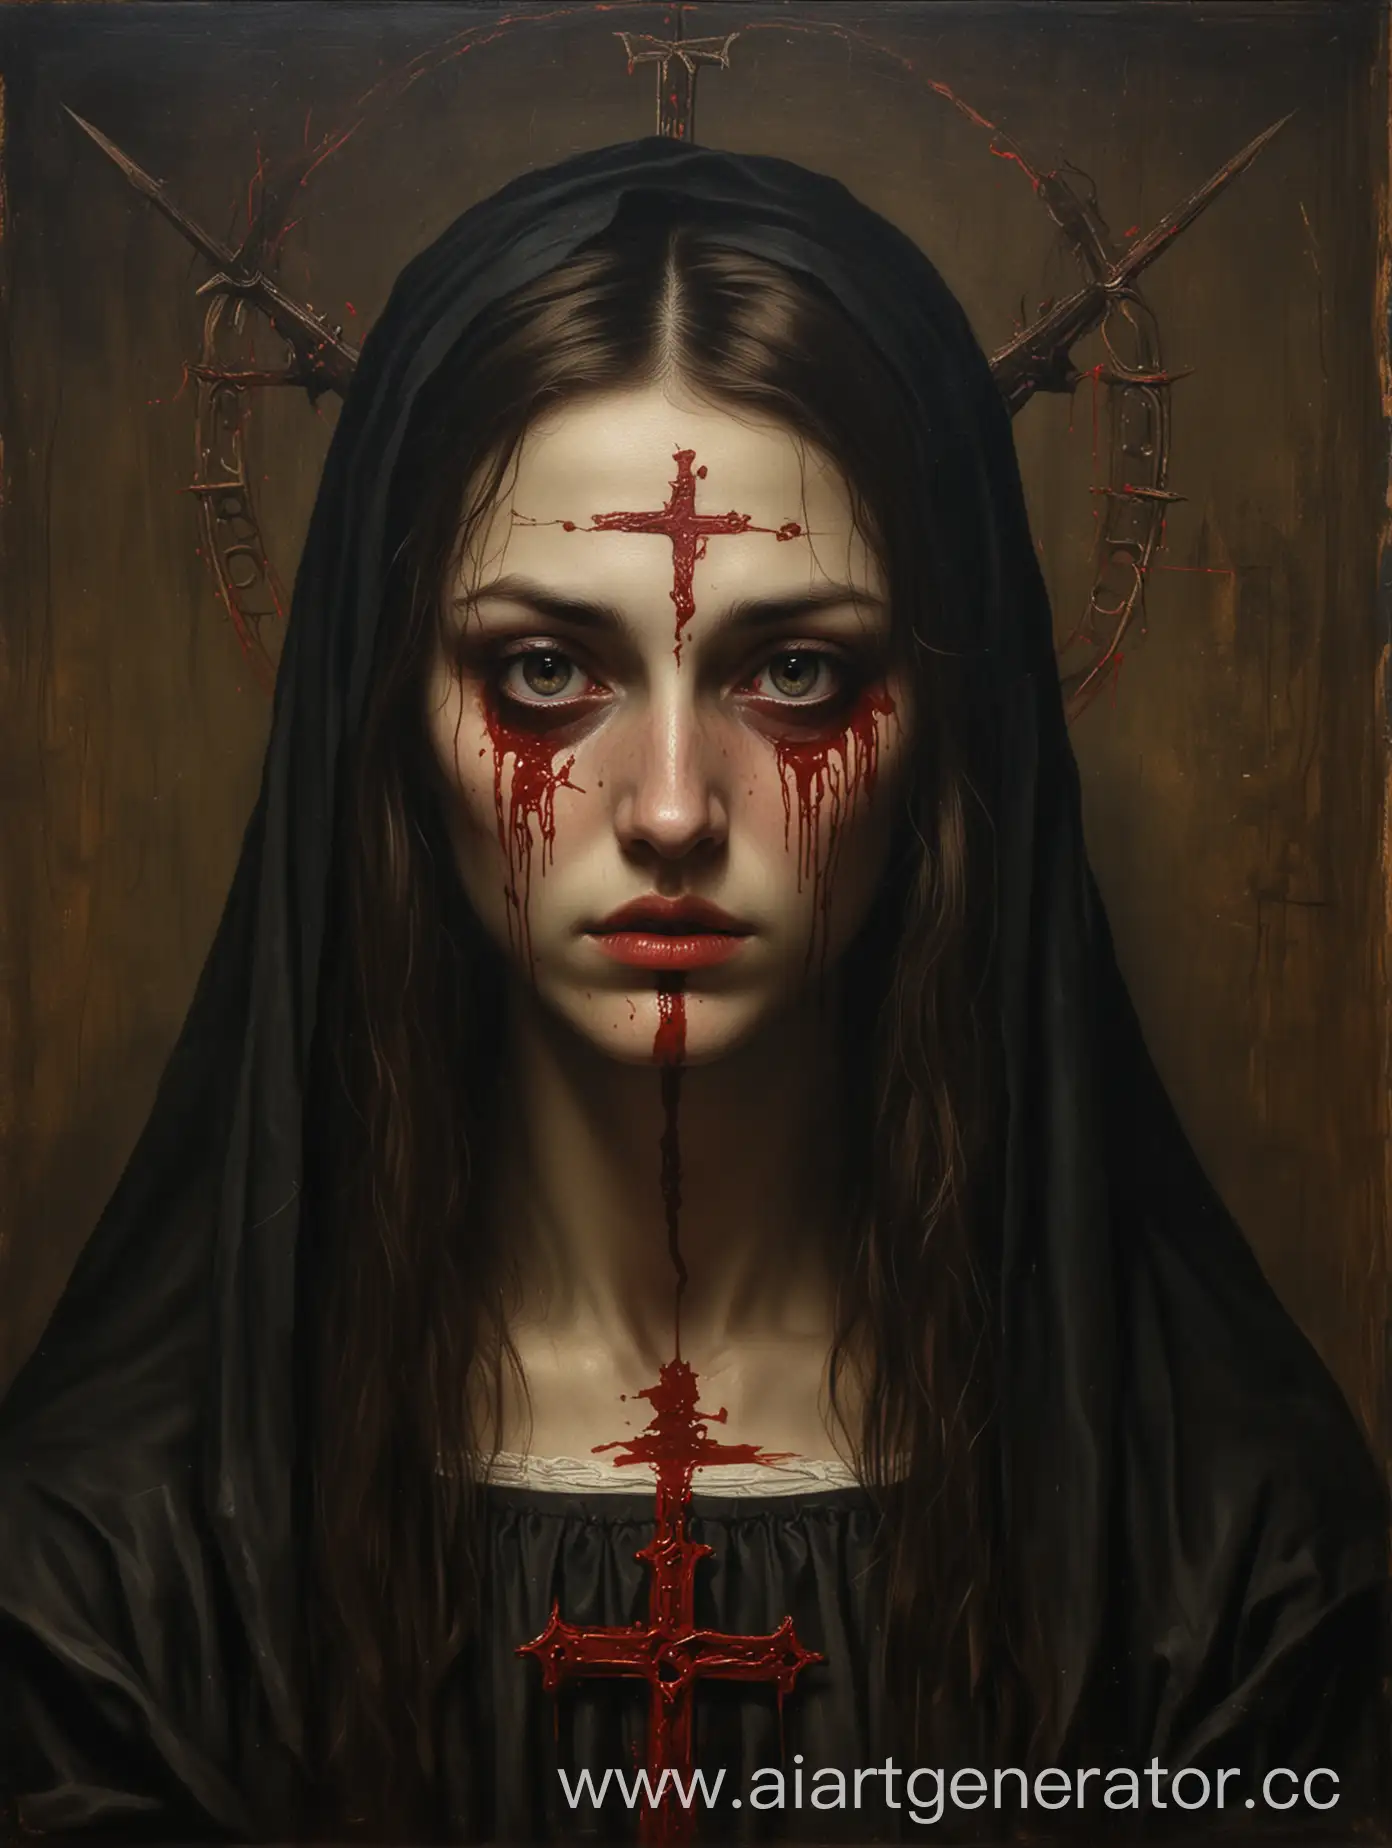 Страшная средневековая картина на тематику сатанизма христианства, молодая женщина глаза которой обливаются кровью, картина очень тёмная и загадочная